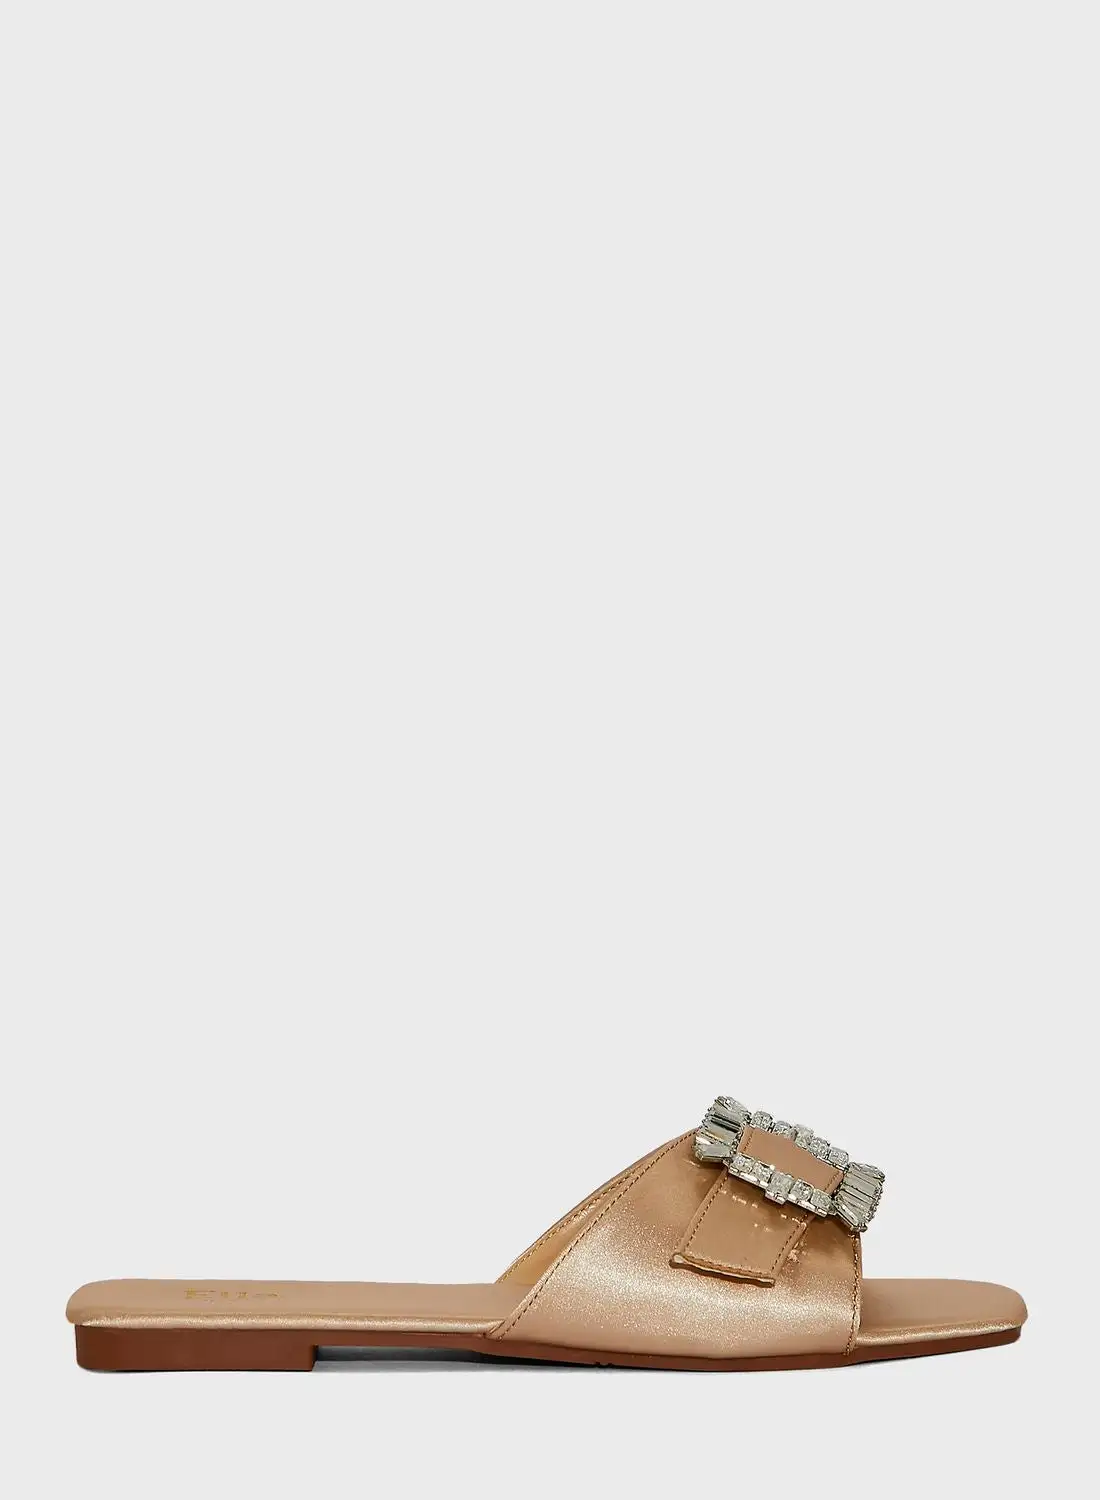 ELLA Jewelled Satin Flat Sandals